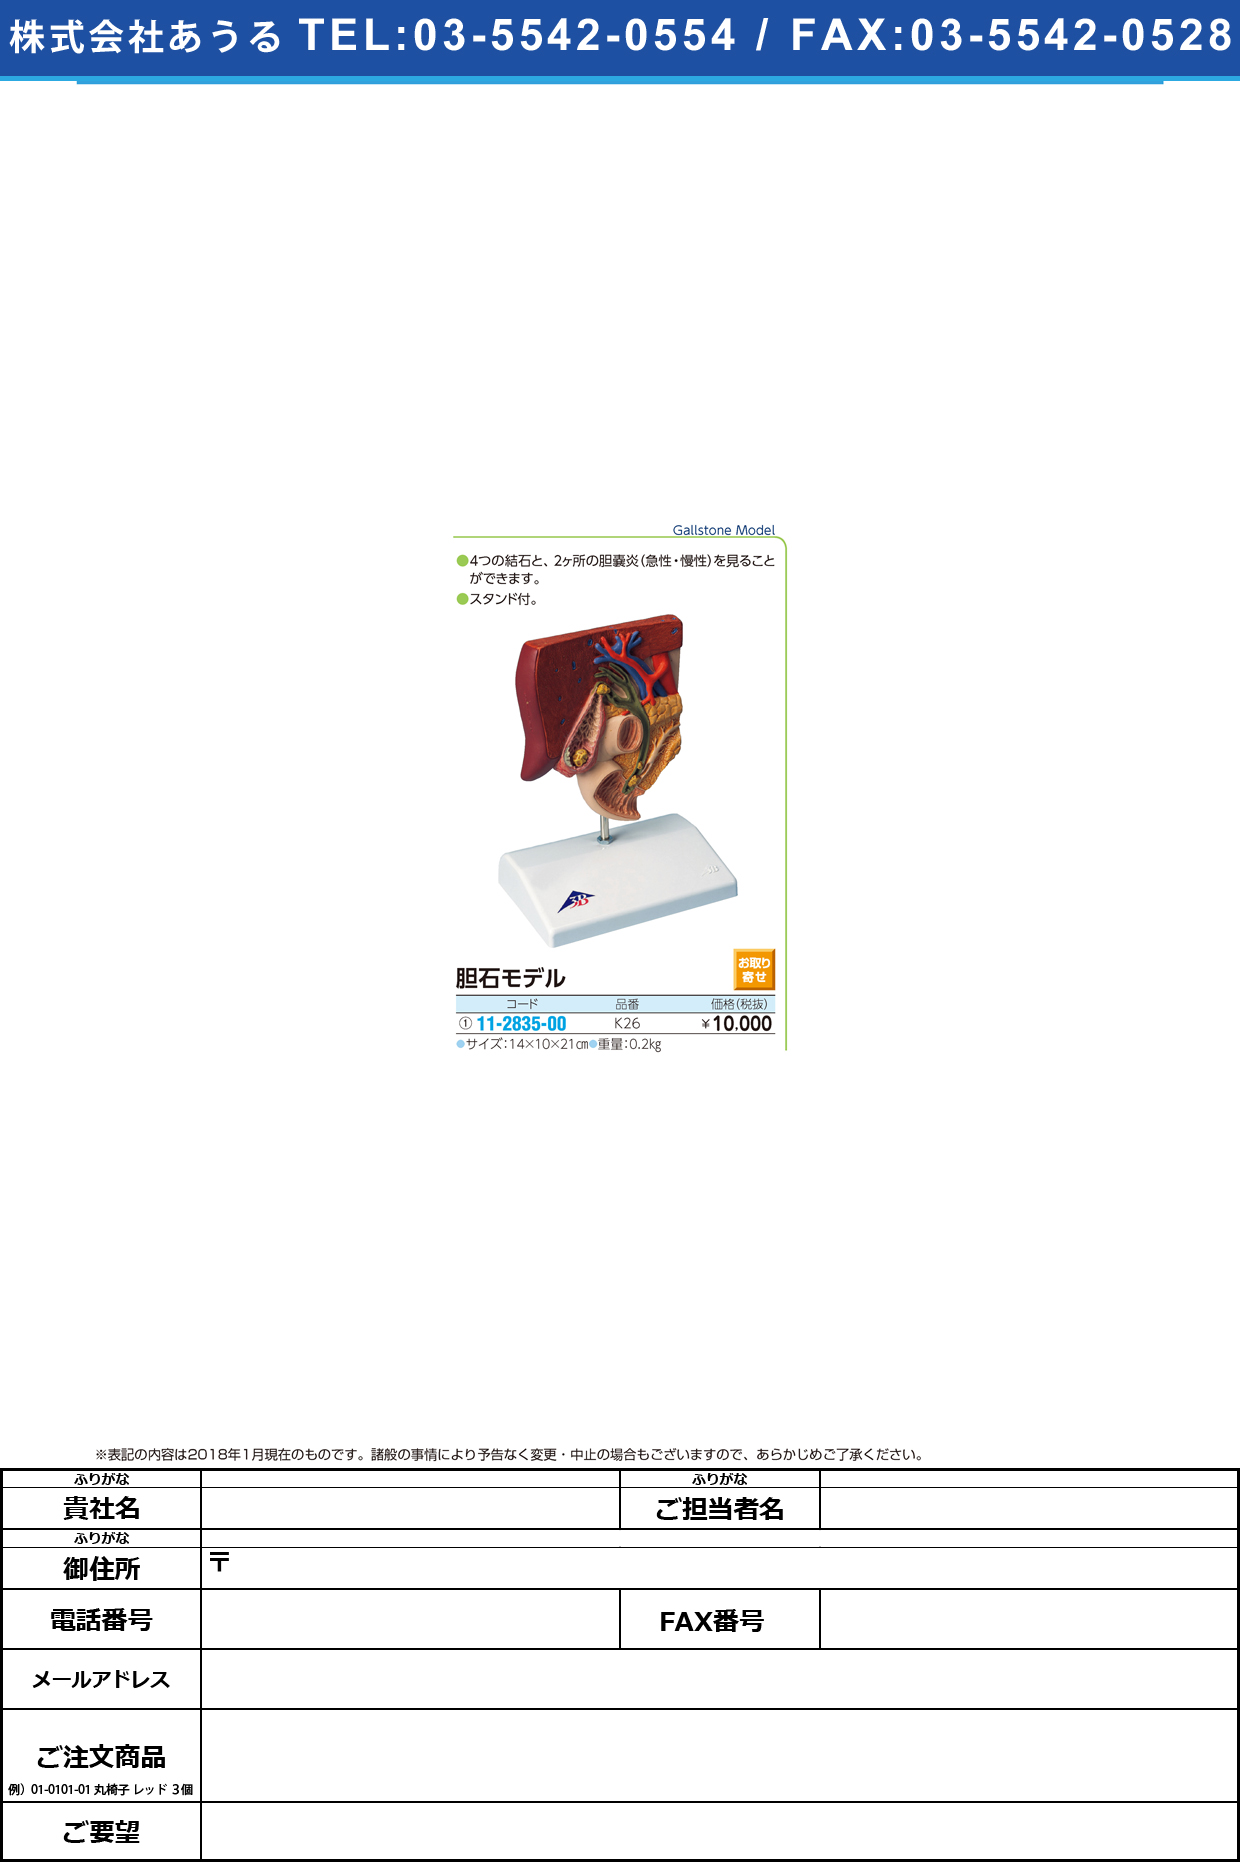 (11-2835-00)胆石モデル K26 ﾀﾝｾｷﾓﾃﾞﾙ(京都科学)【1台単位】【2018年カタログ商品】